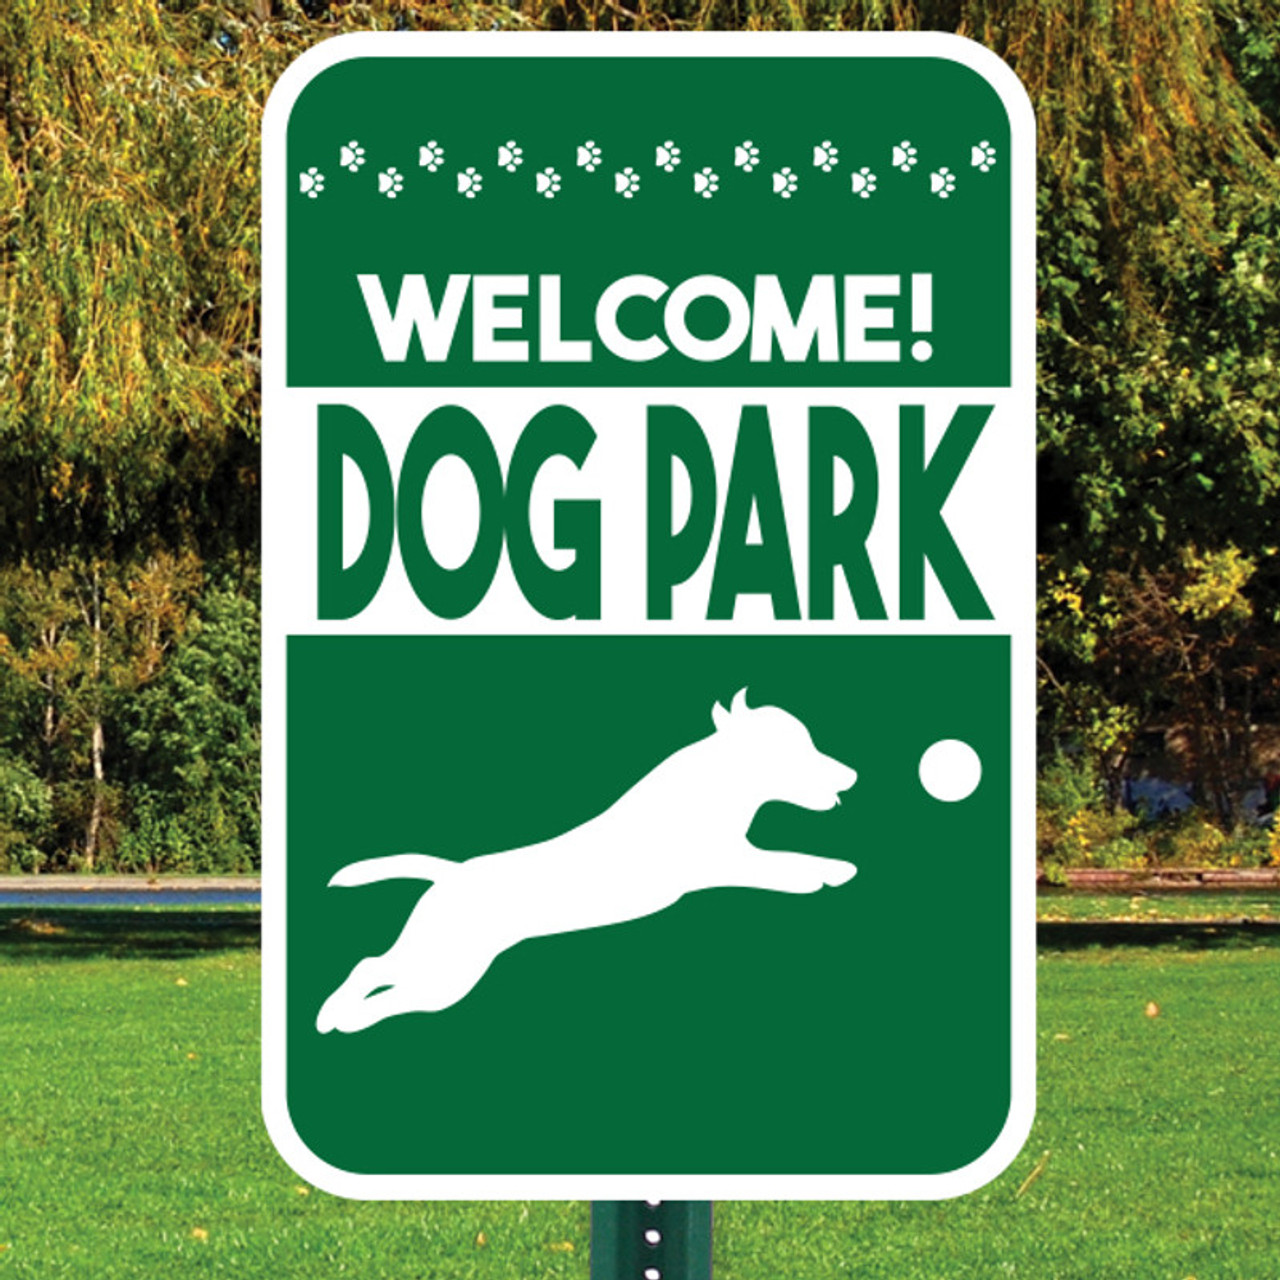 dog park sign